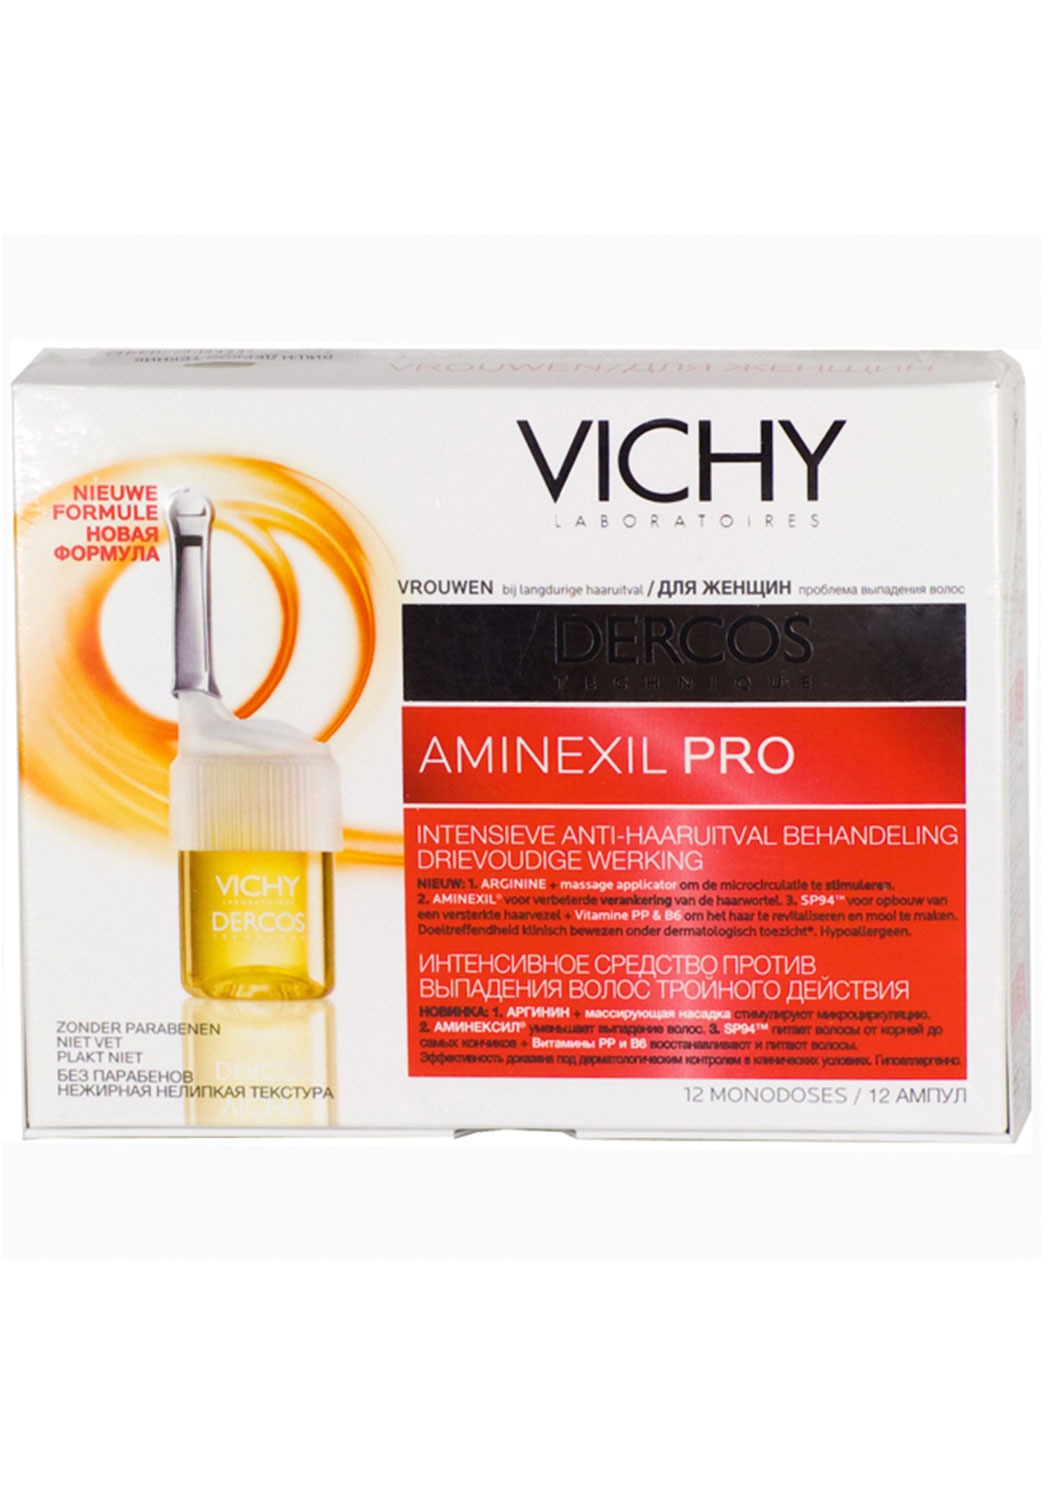 Vichy ампулы против выпадения волос